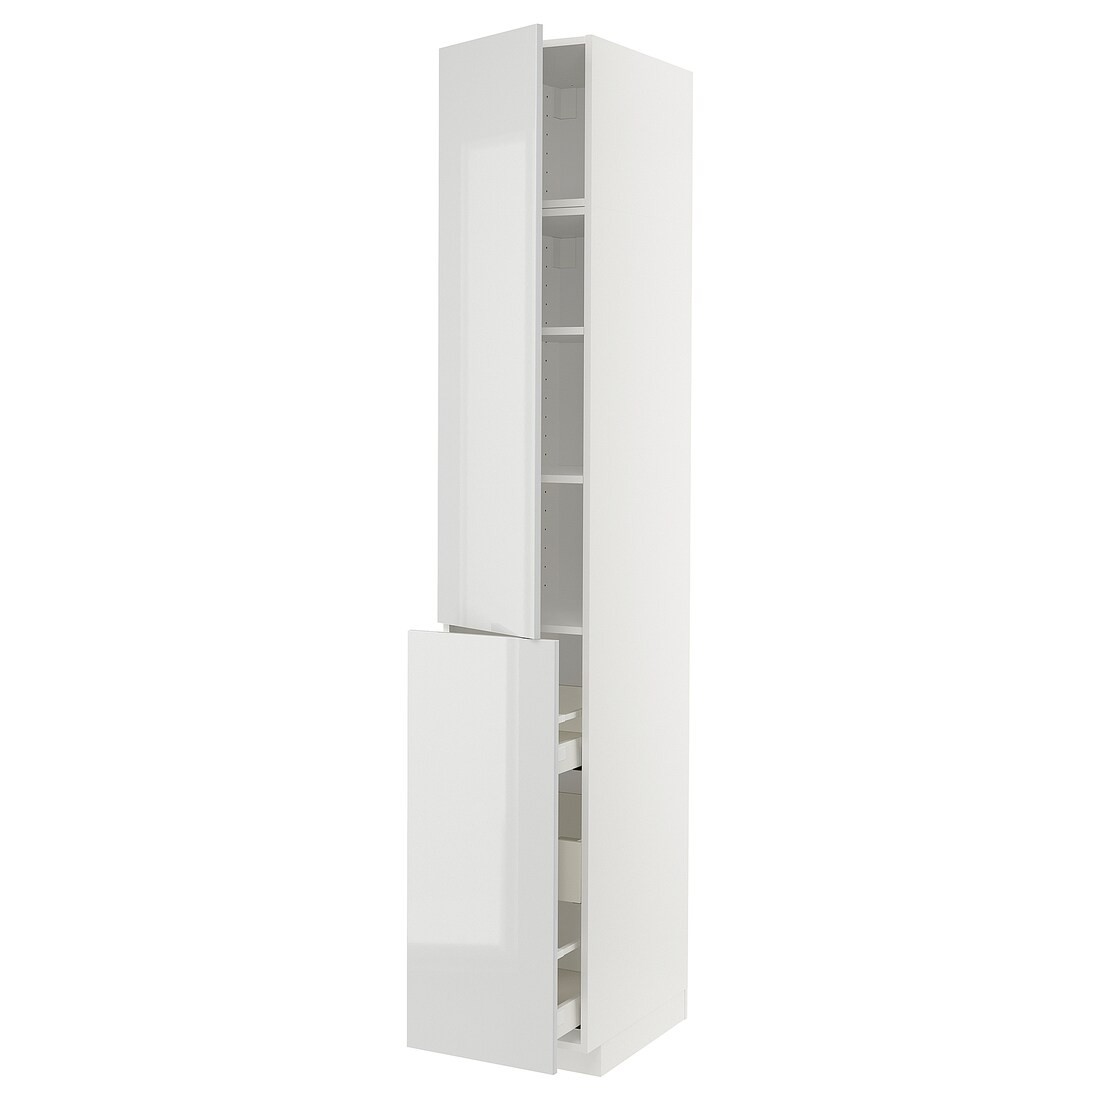 IKEA METOD МЕТОД / MAXIMERA МАКСИМЕРА Высокий шкаф 3 ящика / 1 дверь / 2 полки, белый / Ringhult светло-серый, 40x60x240 см 89469051 | 894.690.51